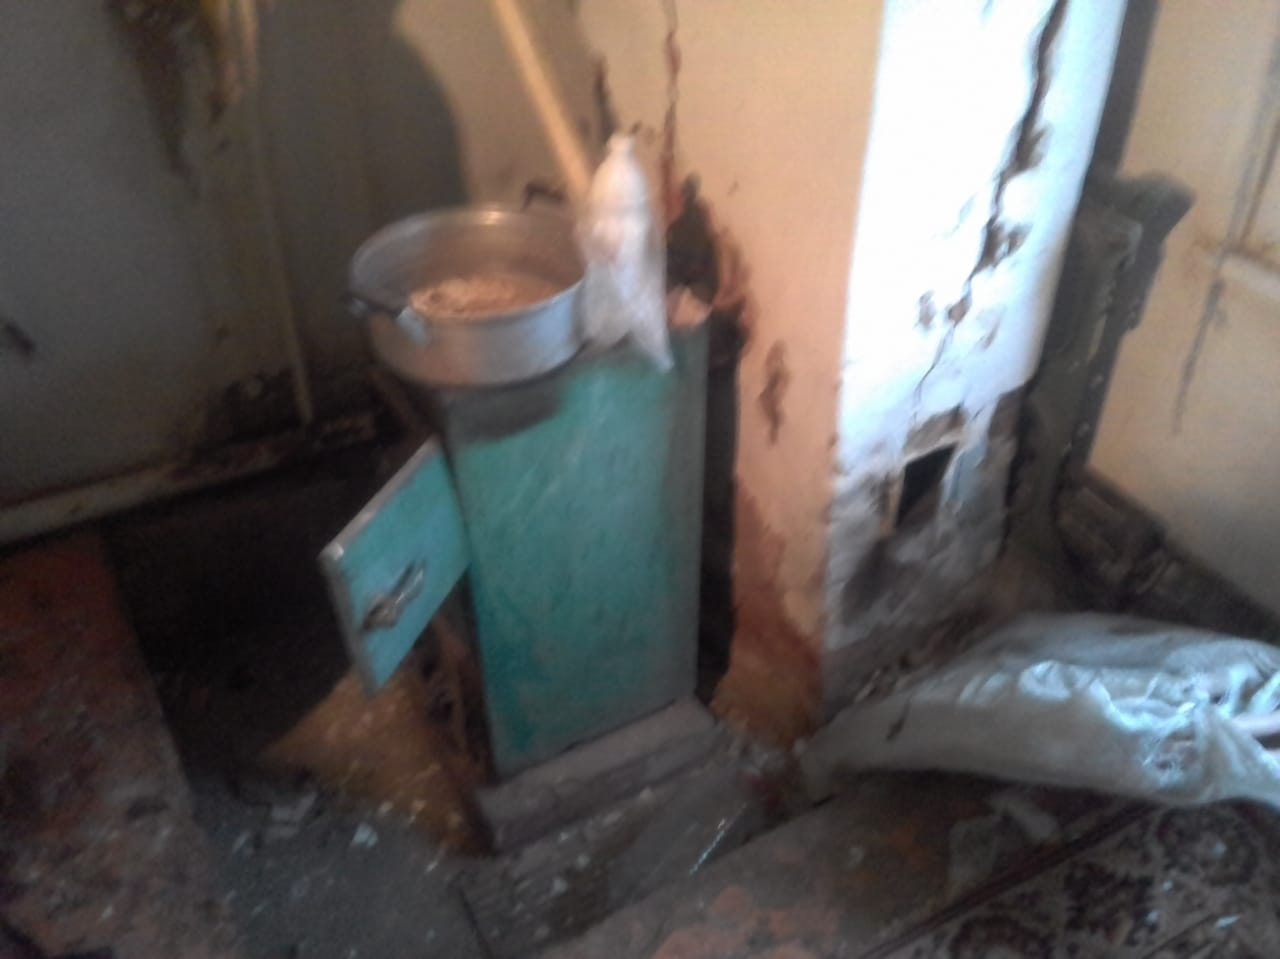 Взрыв прогремел в жилом доме в Волгоградской области: женщину с рваной раной лица увезли в больницу